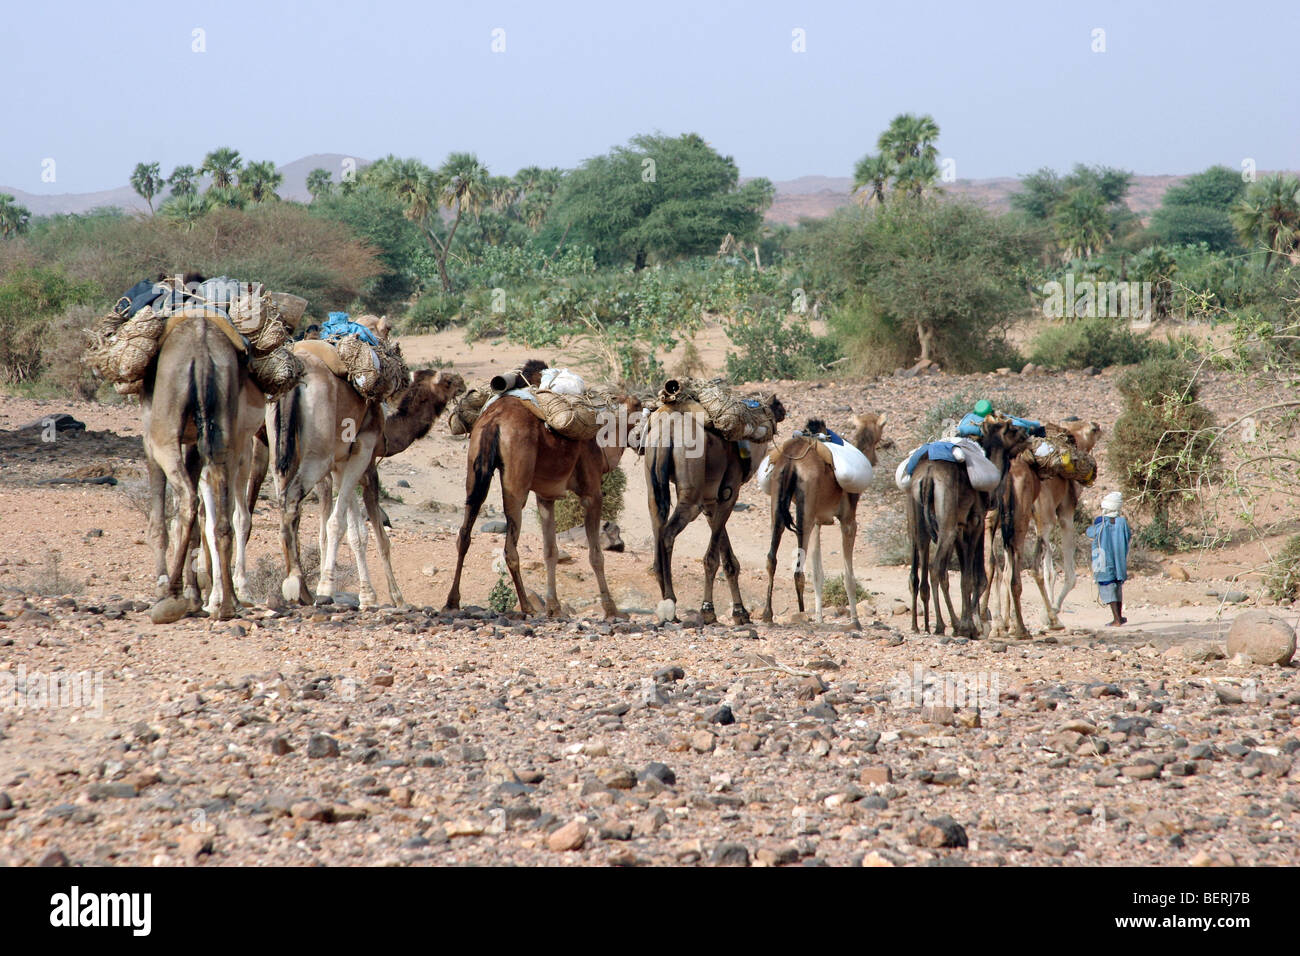 Dromedario cammelli (Camelus dromedarius) con la merce nel deserto del Sahara, Aïr montagne / Aïr massiccio, Niger, Africa occidentale Foto Stock